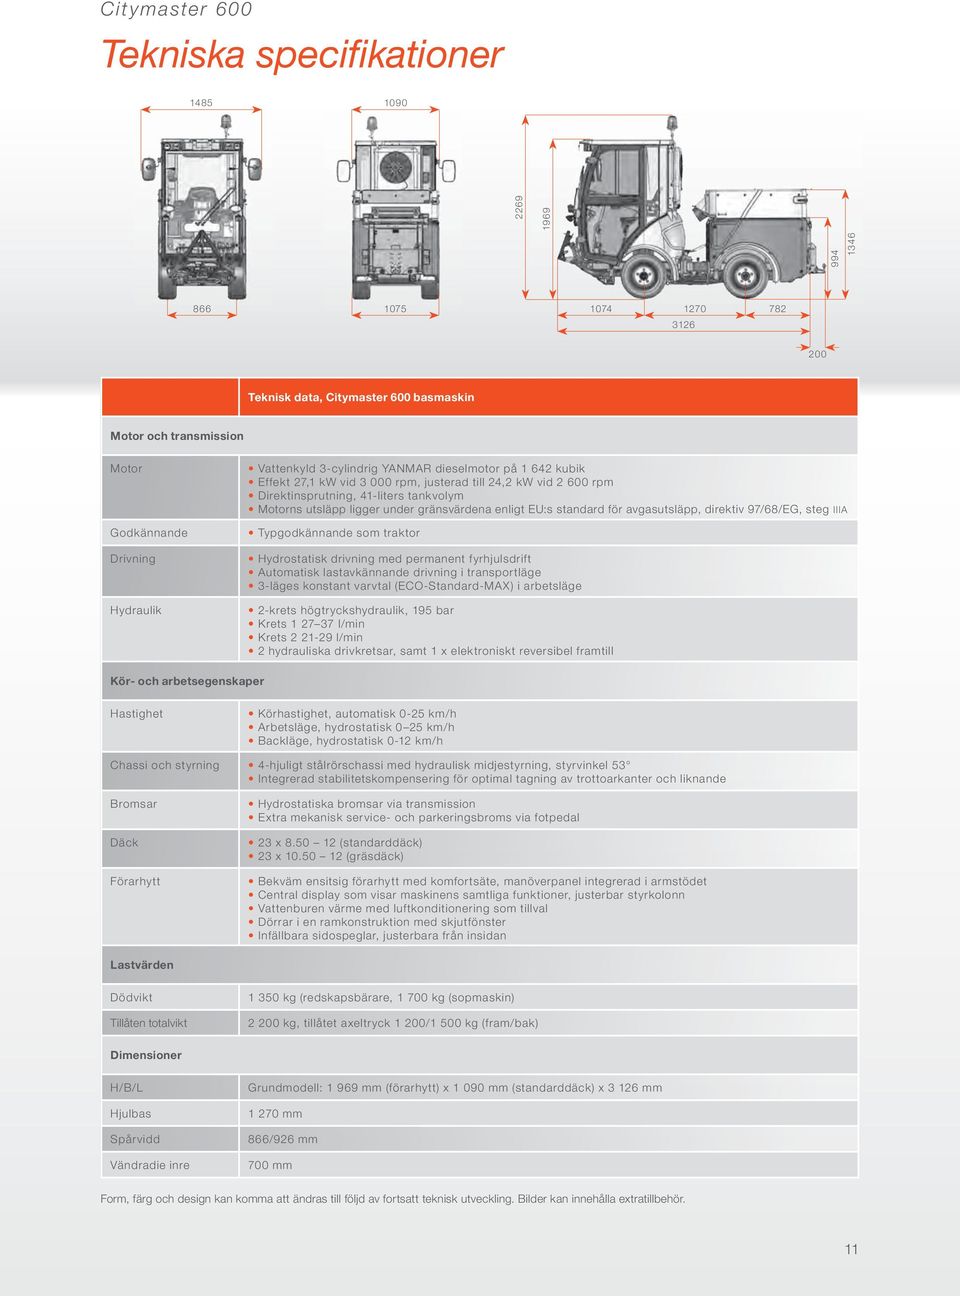 gränsvärdena enligt EU:s standard för avgasutsläpp, direktiv 97/68/EG, steg IIIA Typgodkännande som traktor Hydrostatisk drivning med permanent fyrhjulsdrift Automatisk lastavkännande drivning i